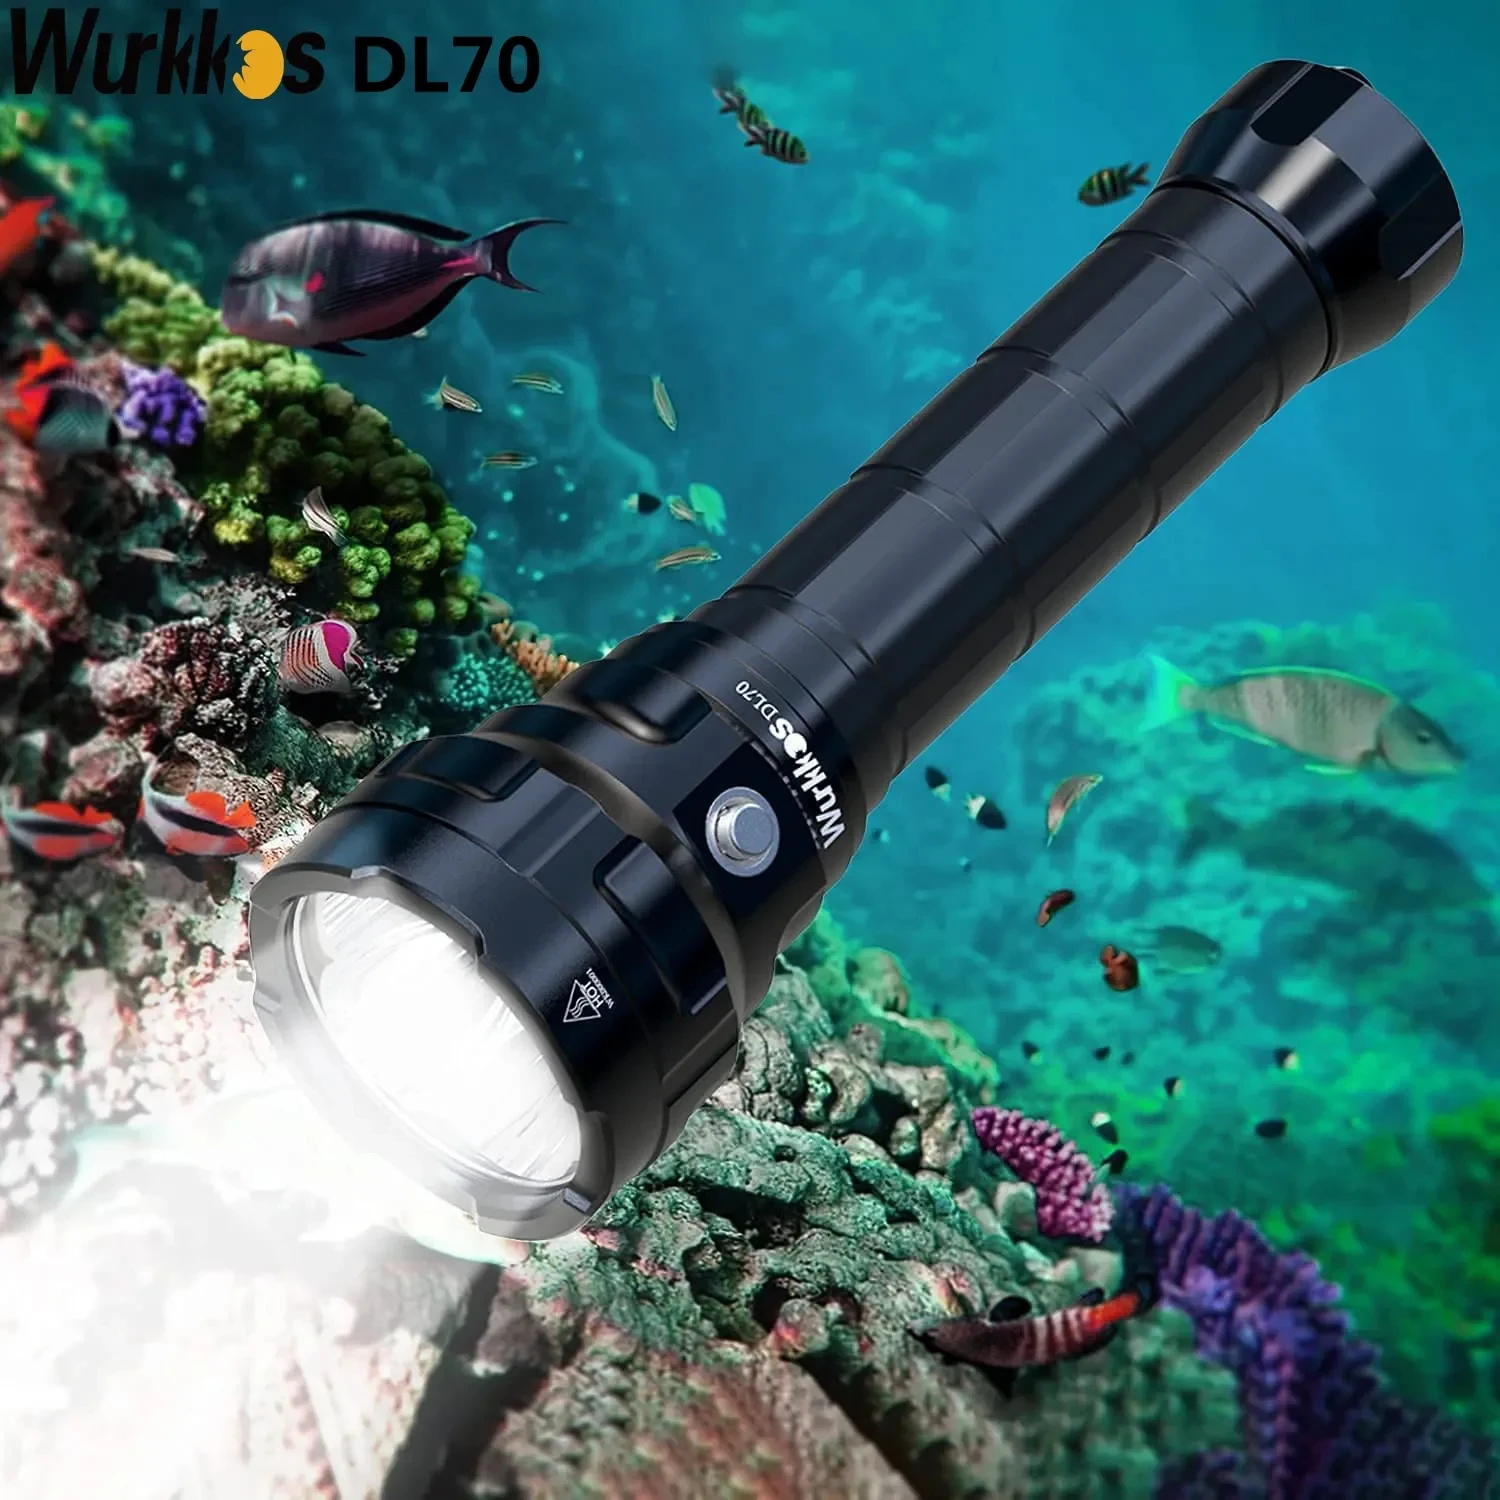 Wurkkos dl70 super brilhante duplo 26650 bateria 13000lm ipx8 mergulho subaquático à prova dwaterproof água led luz 4 * xhp50b 4 modos